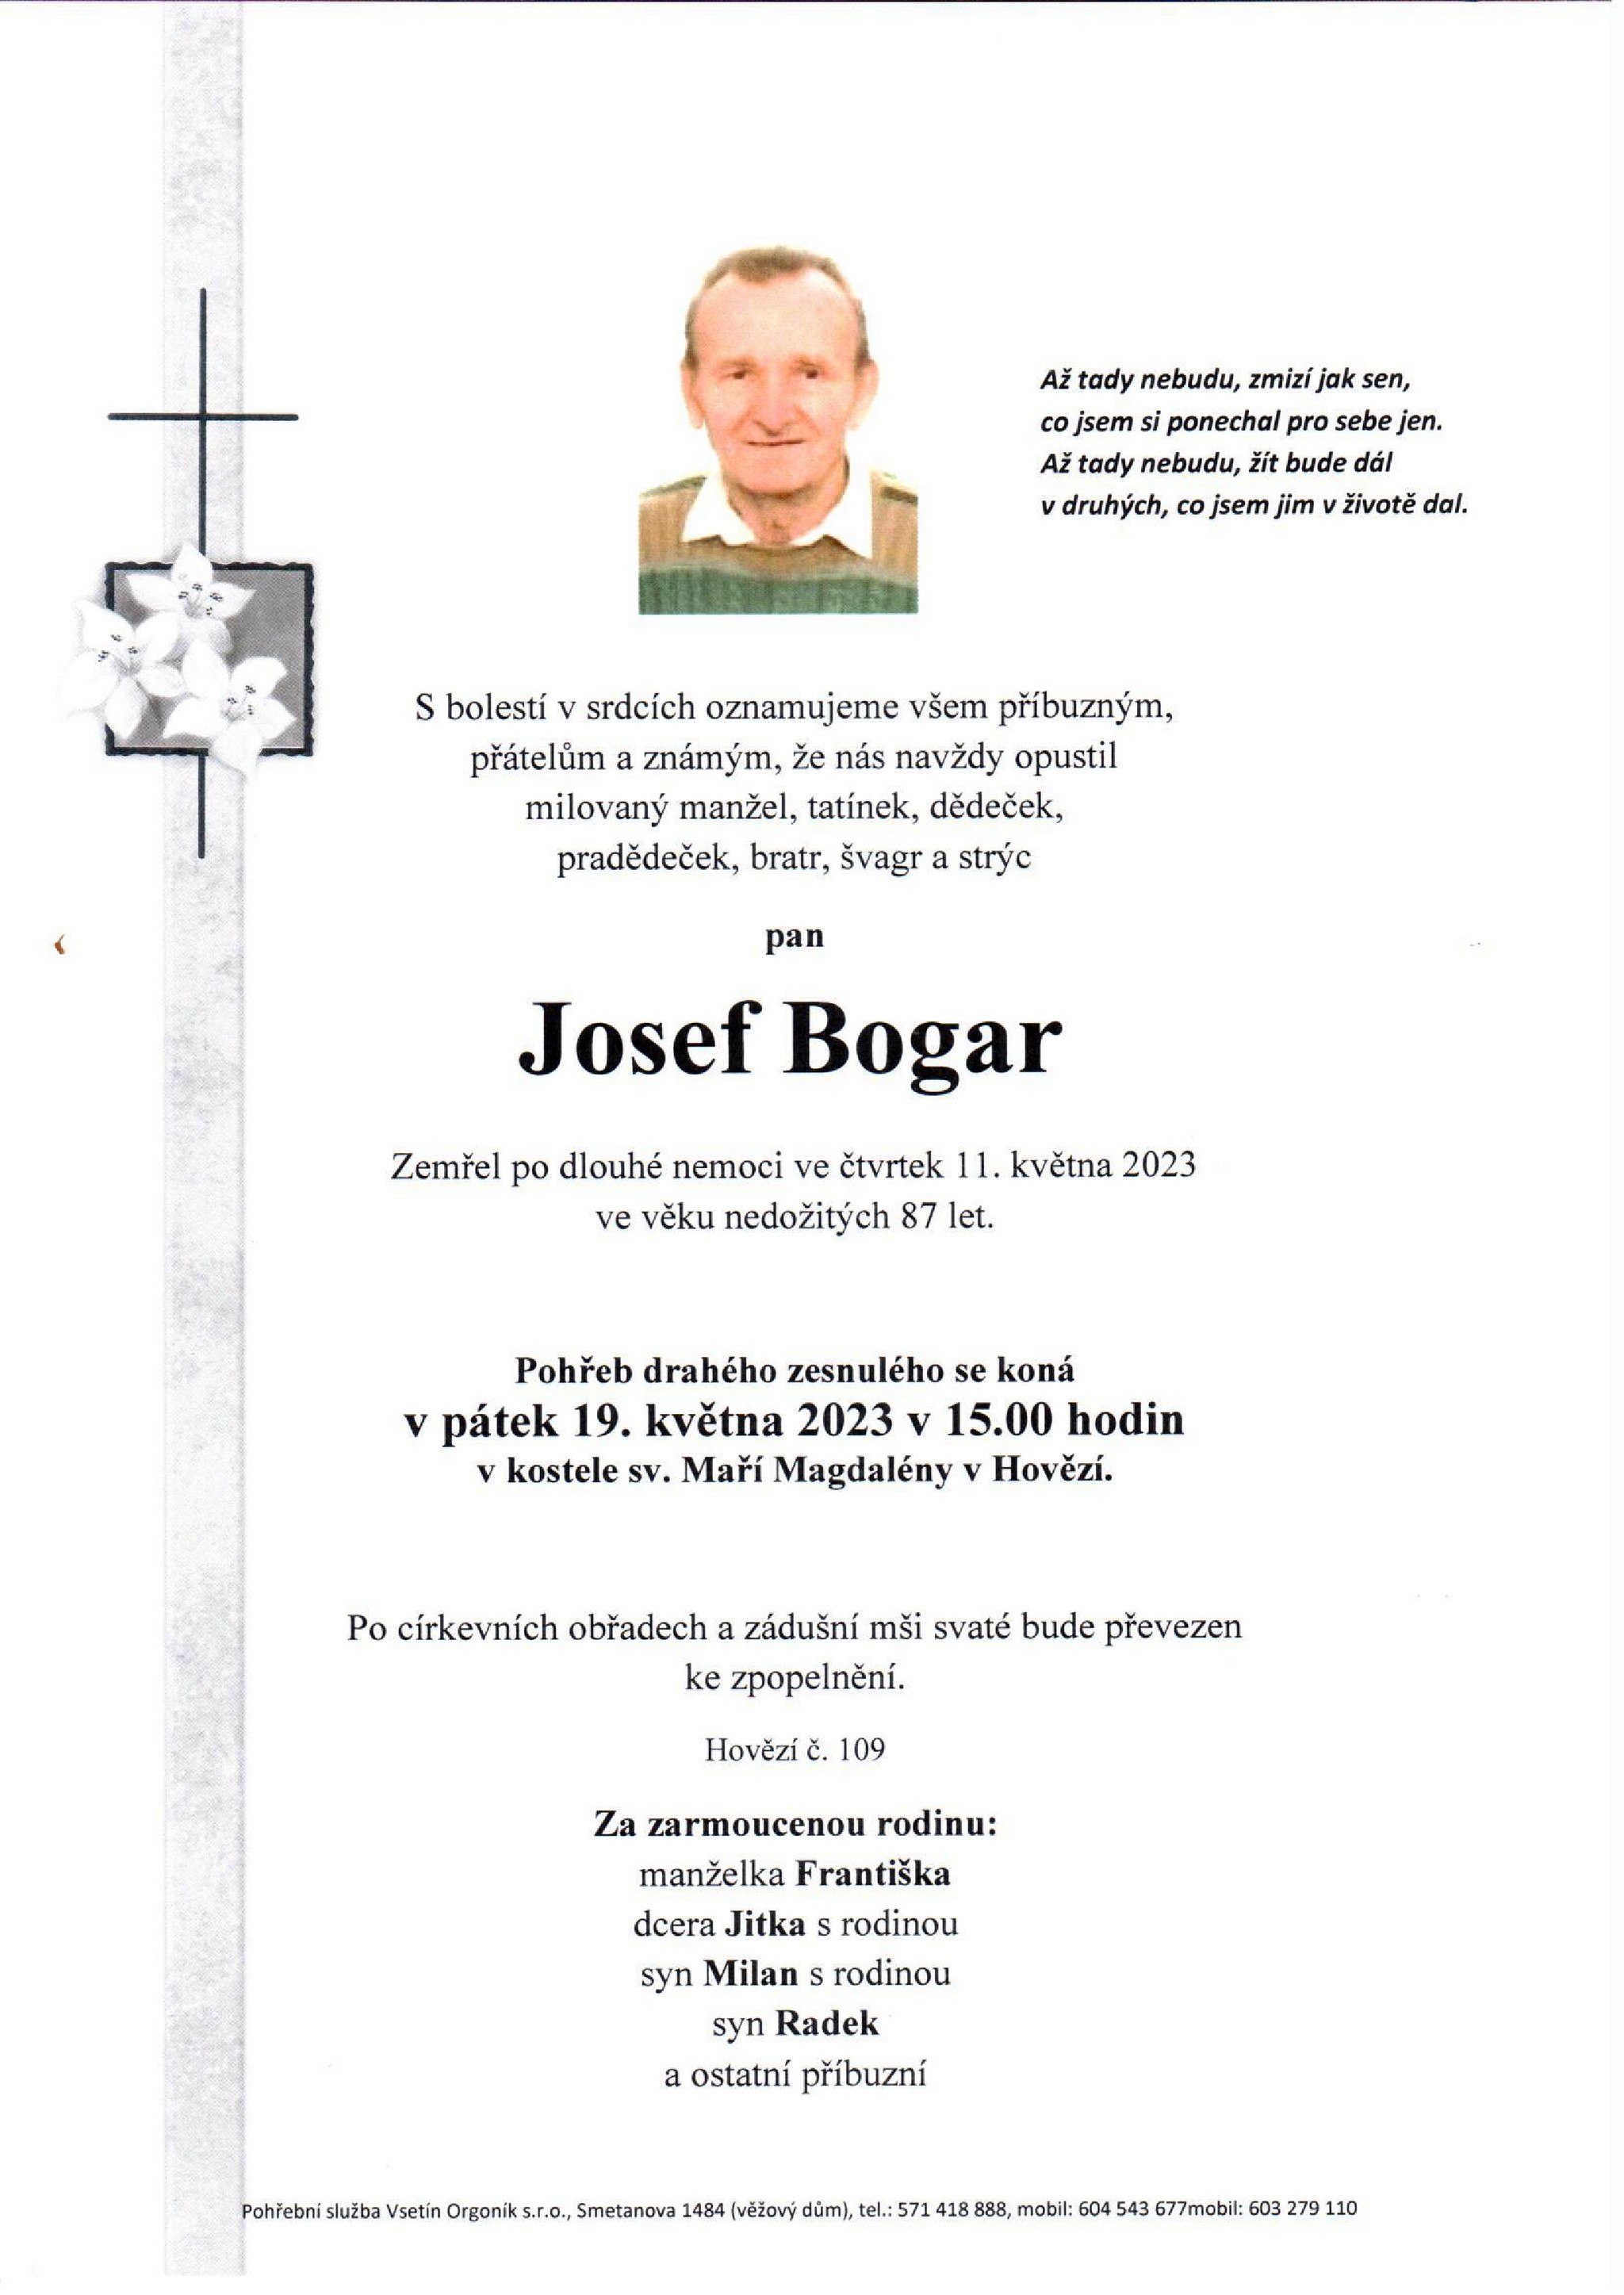 Josef Bogar